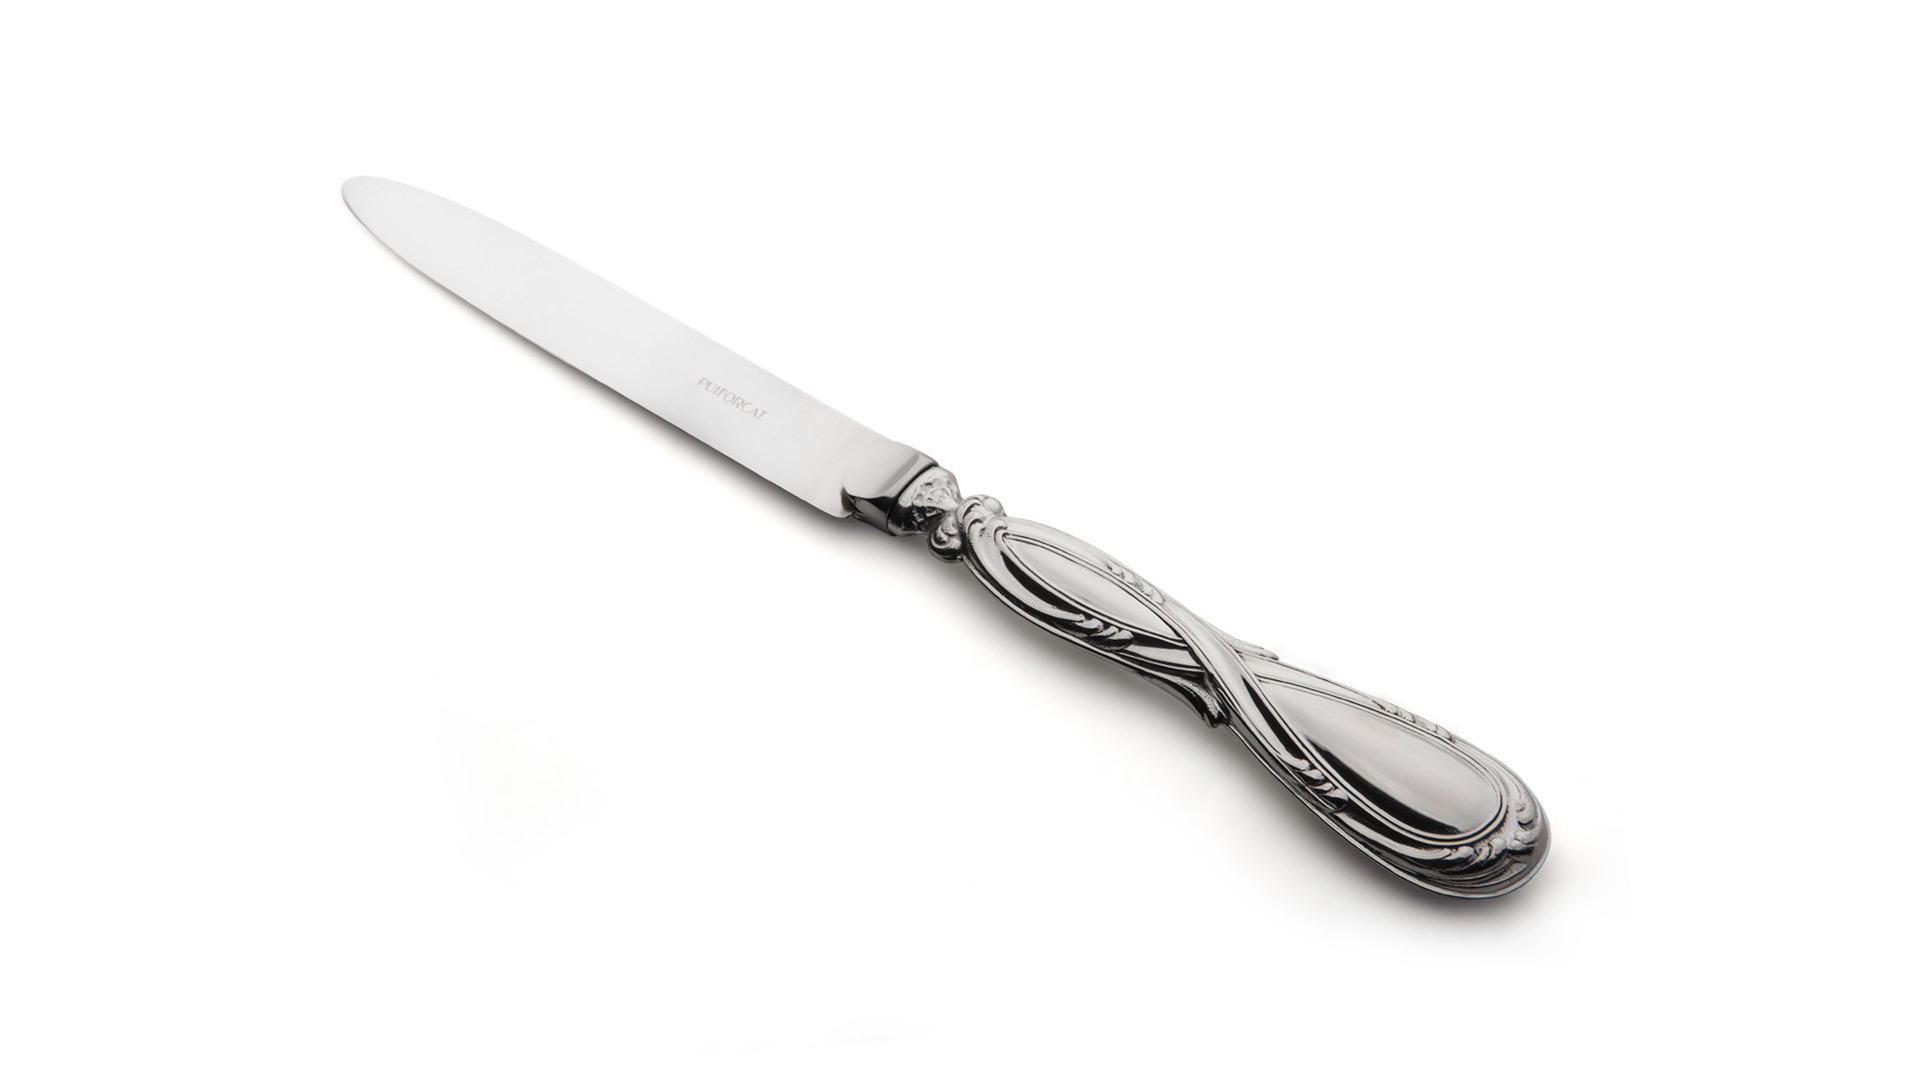 Нож десертный 20,5см Роял, серебро 925 пробы